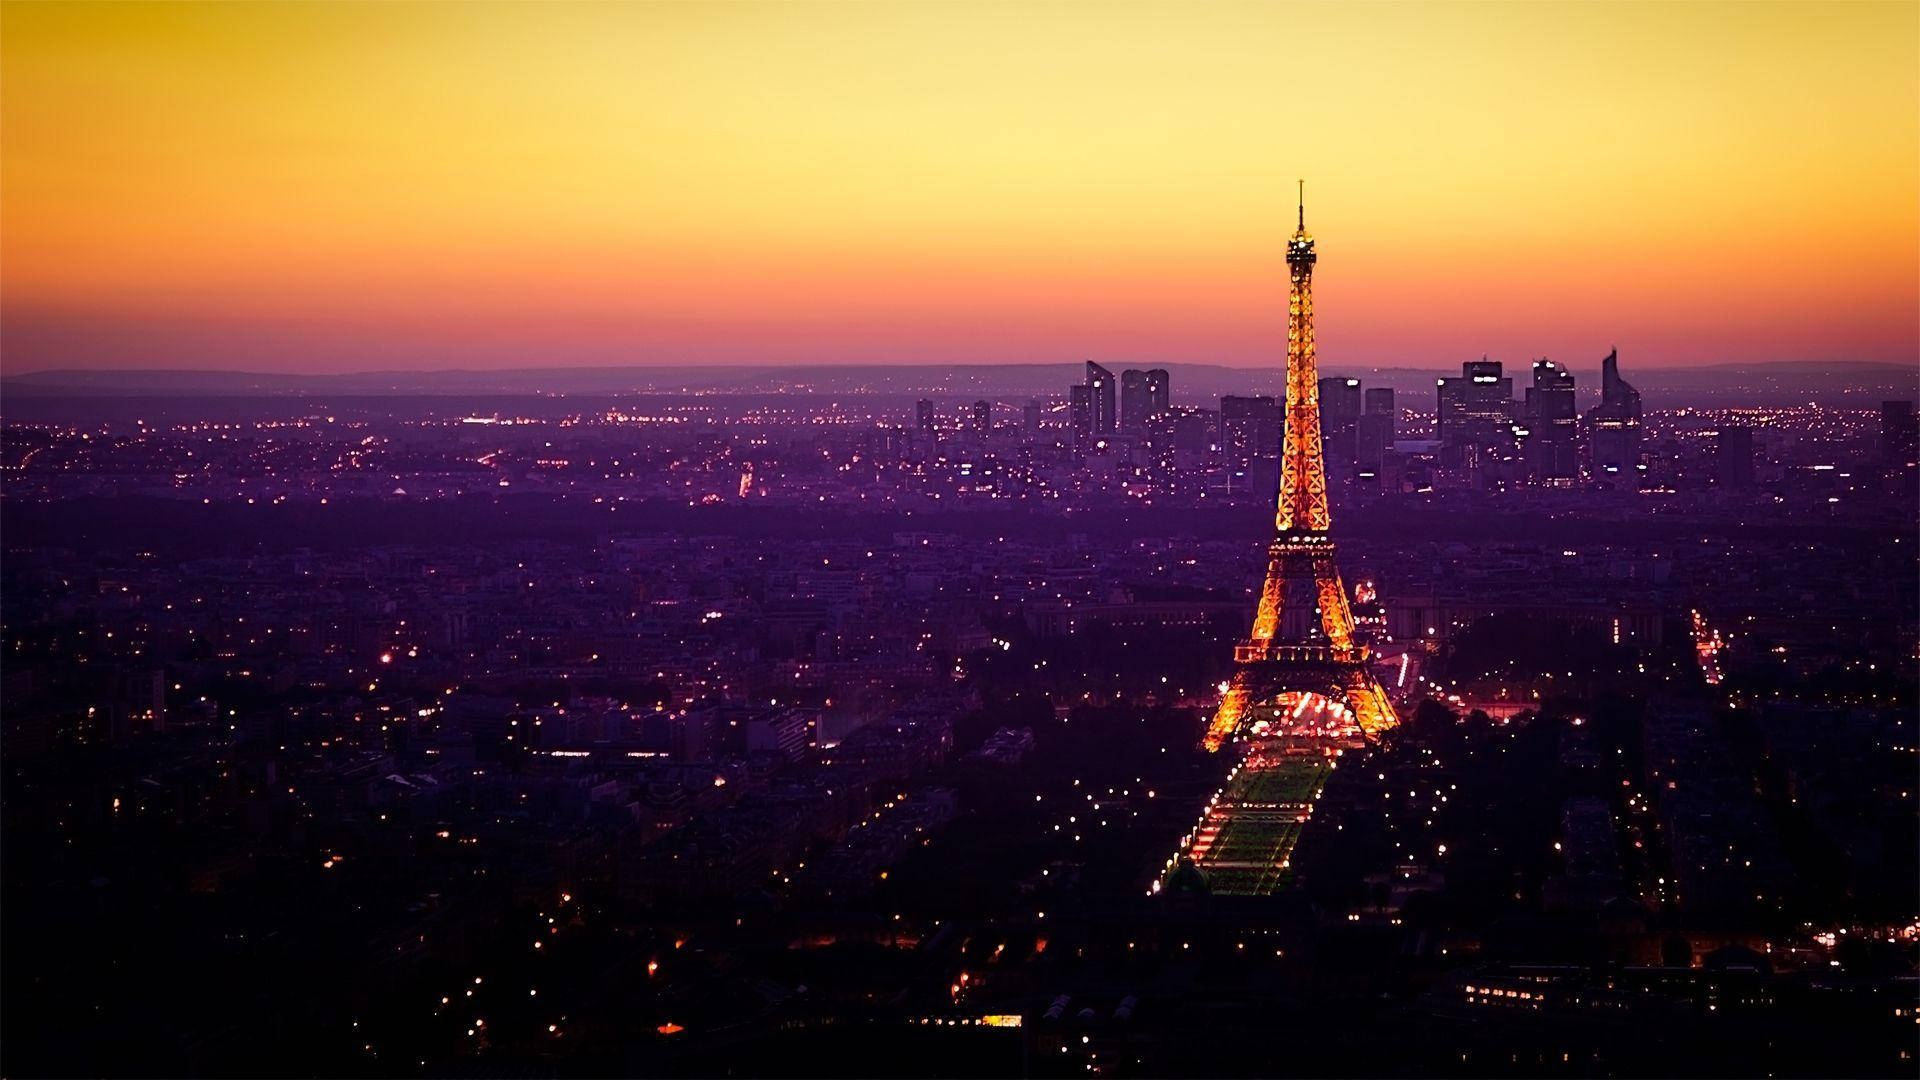 Cieloal Atardecer Sobre La Torre Eiffel De París. Fondo de pantalla